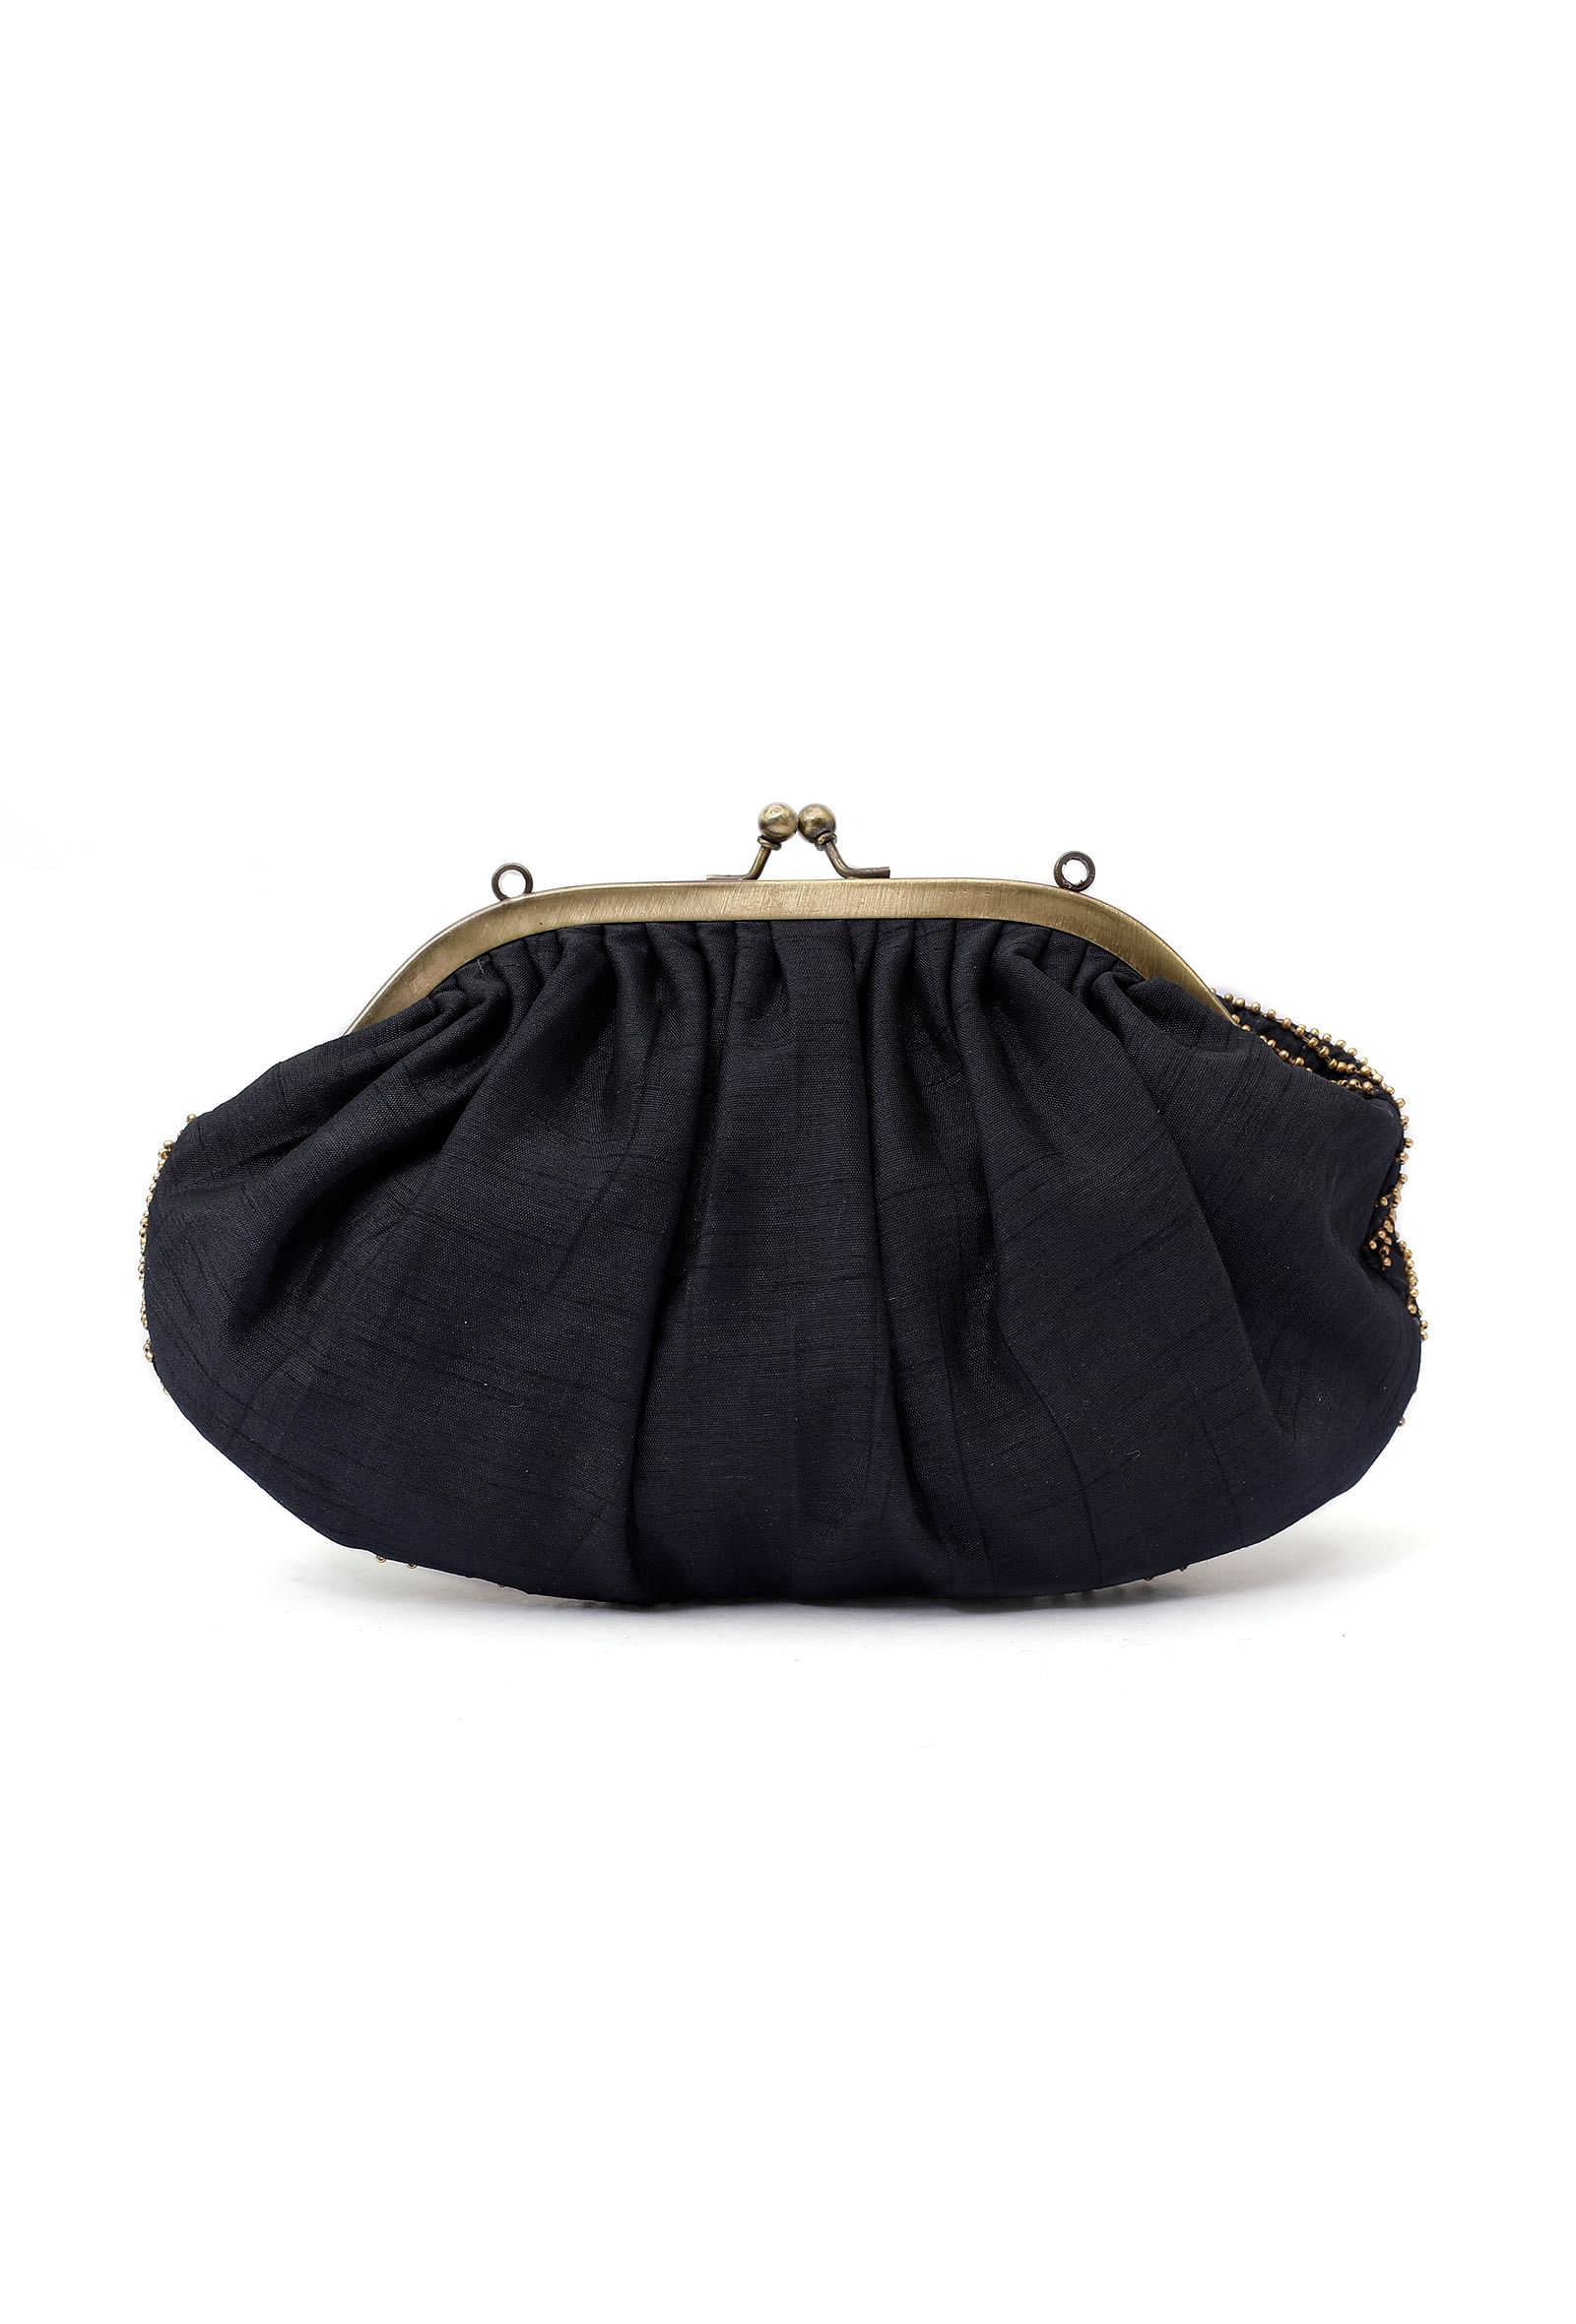 Saira Black Embellished Clutch Bag